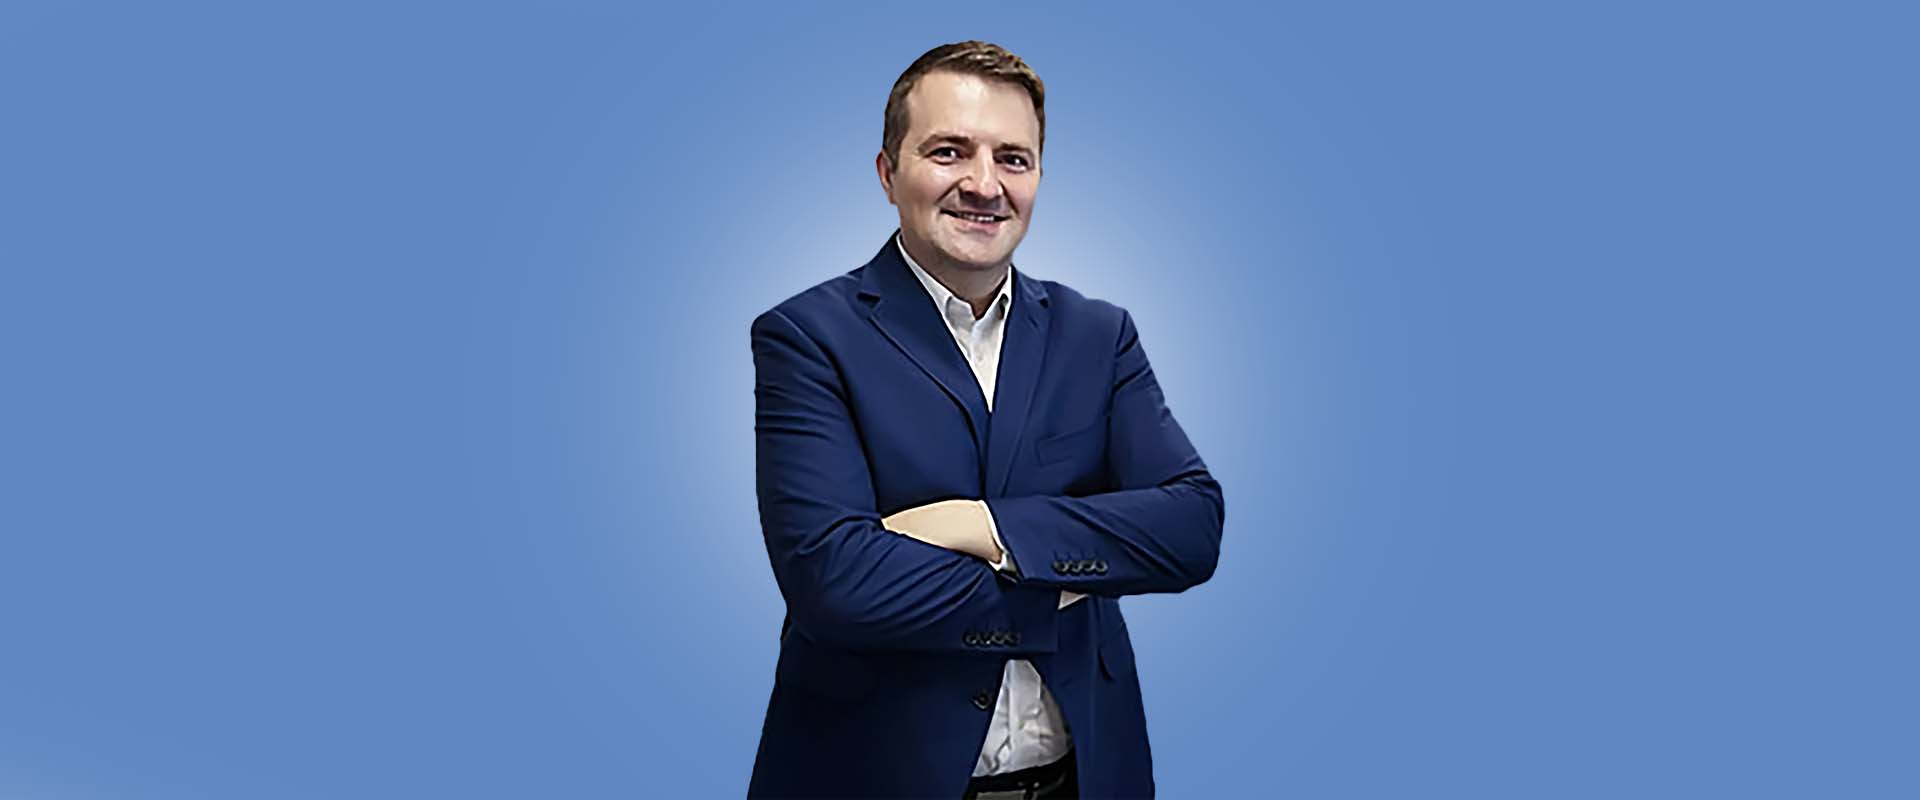 Jarosław Zuchora, CEO, agencji marketingowej Wedo Sp. z o.o